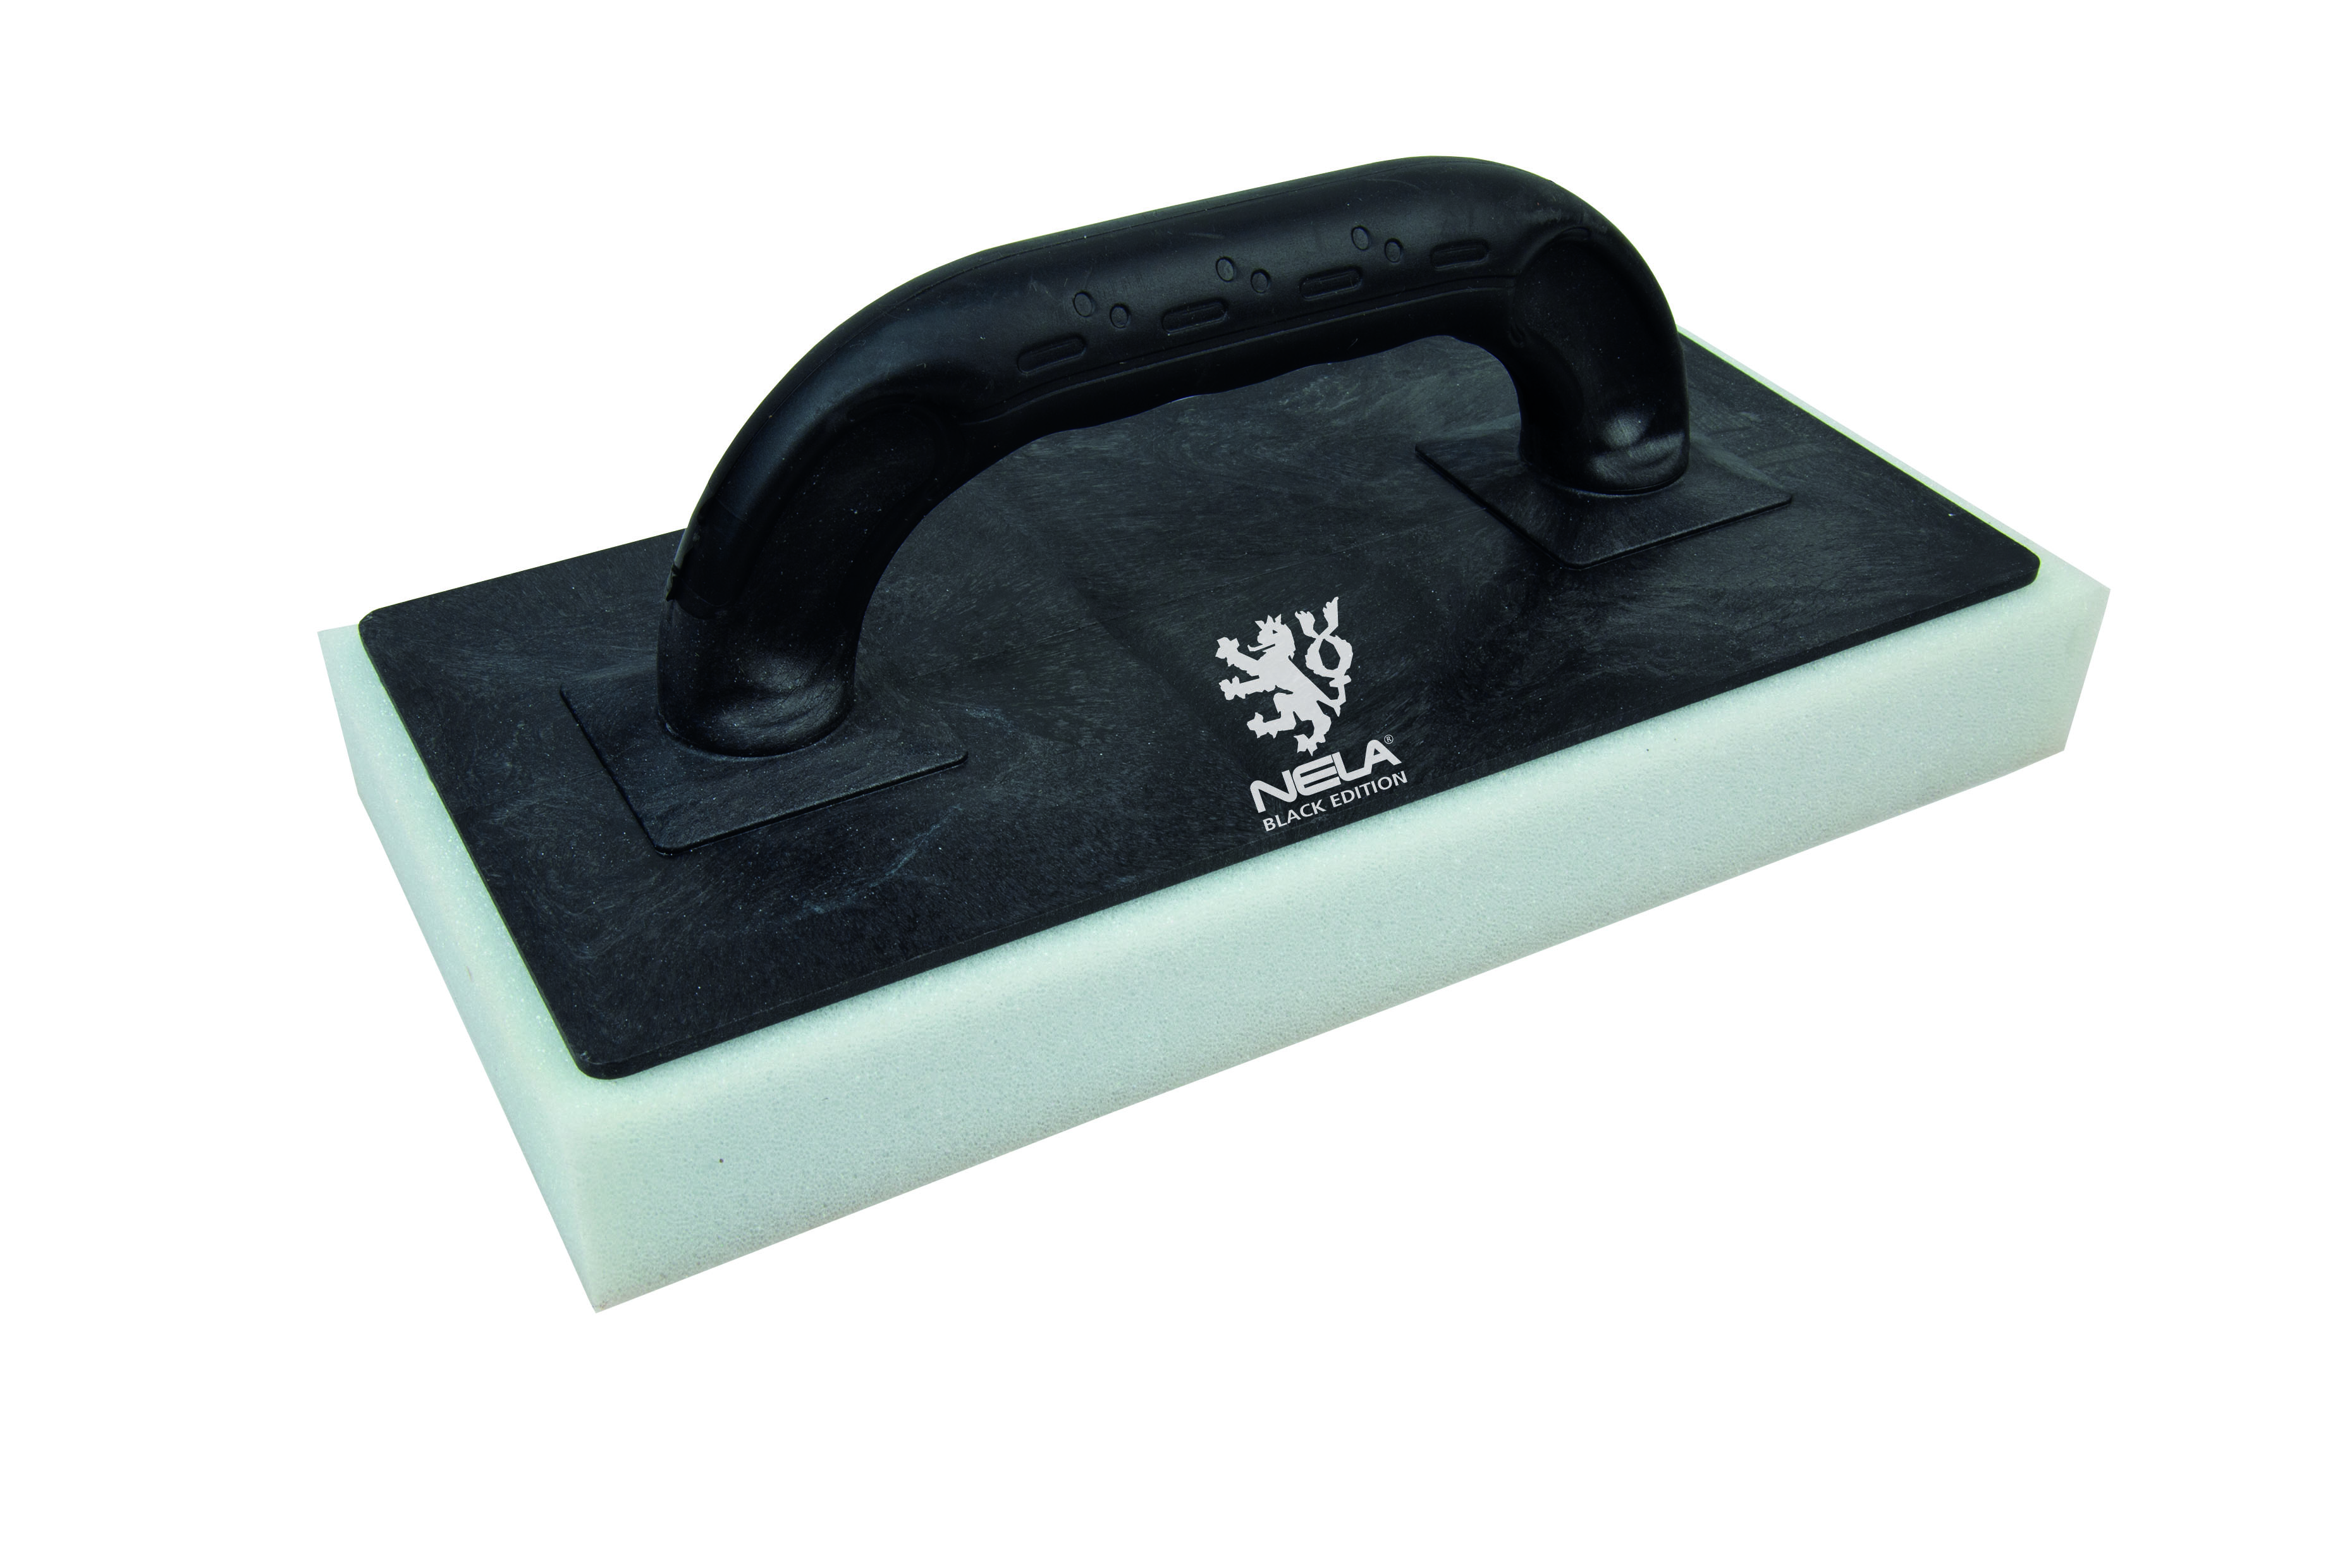 Black Edition Sponge Float with Blue Foam Rubber  - Hard